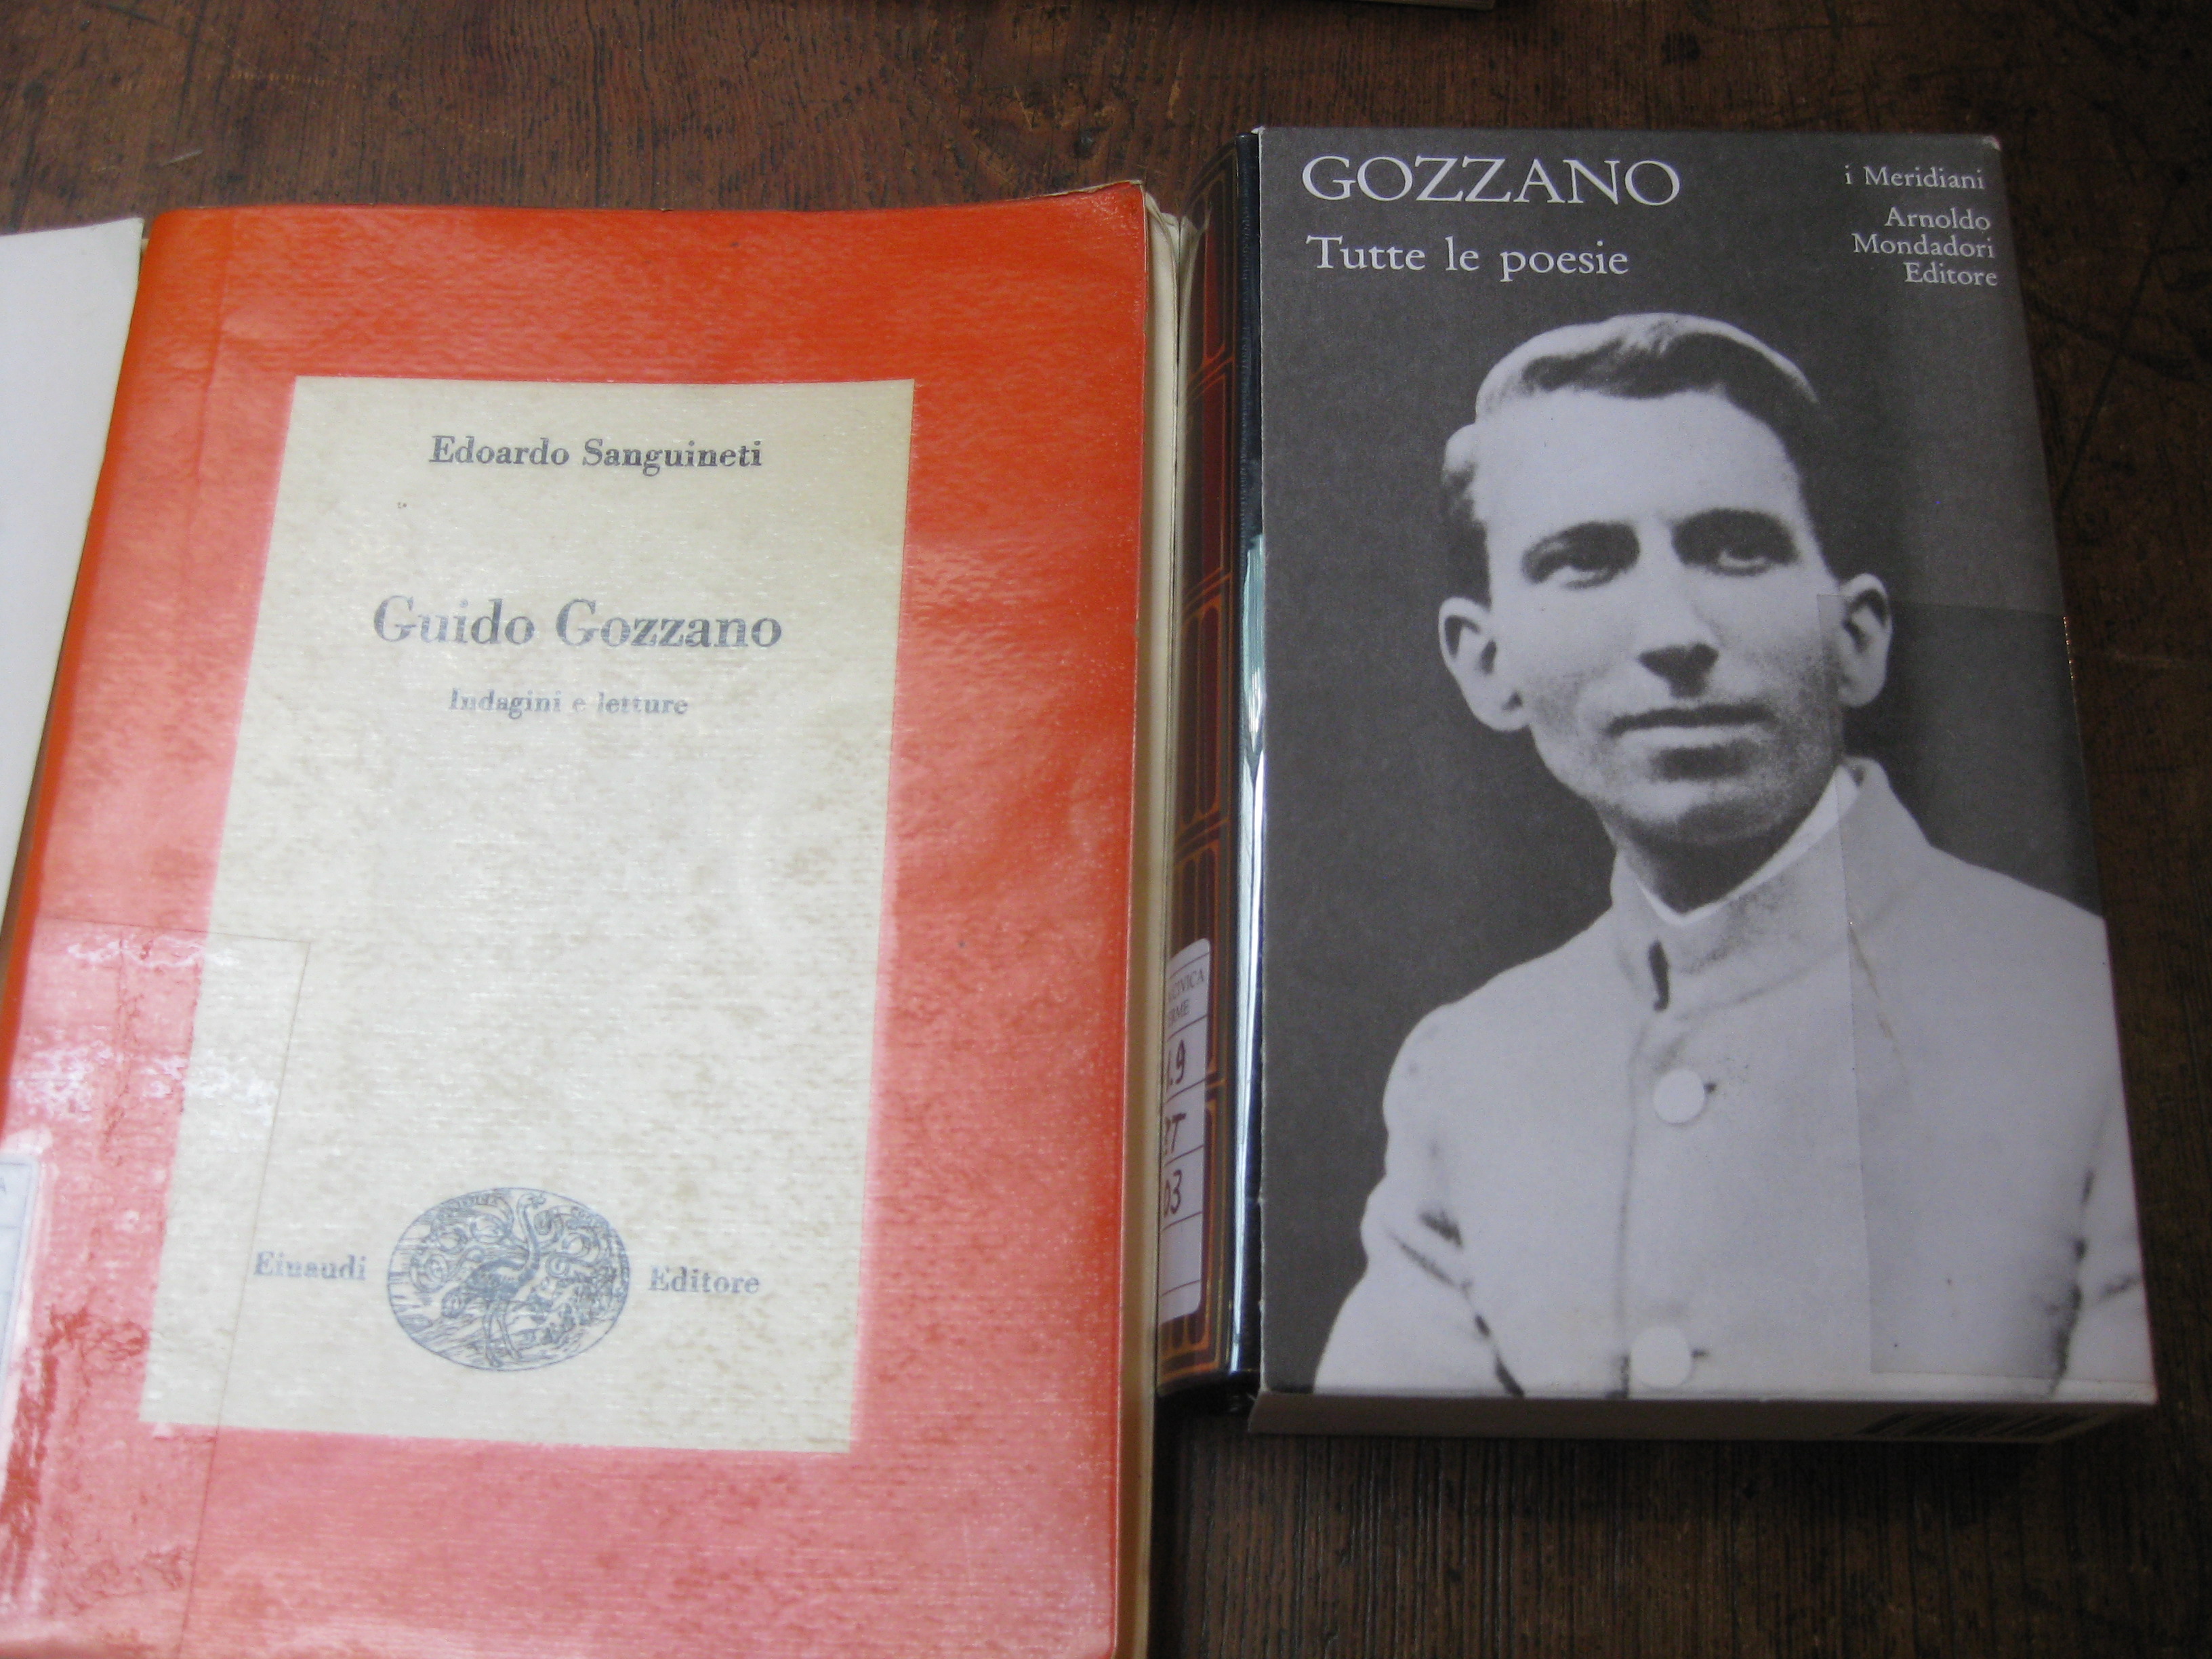 Poesia Di Natale Guido Gozzano.Libri Pubblicati Di E Su Guido Gozzano Concorsoguidogozzano